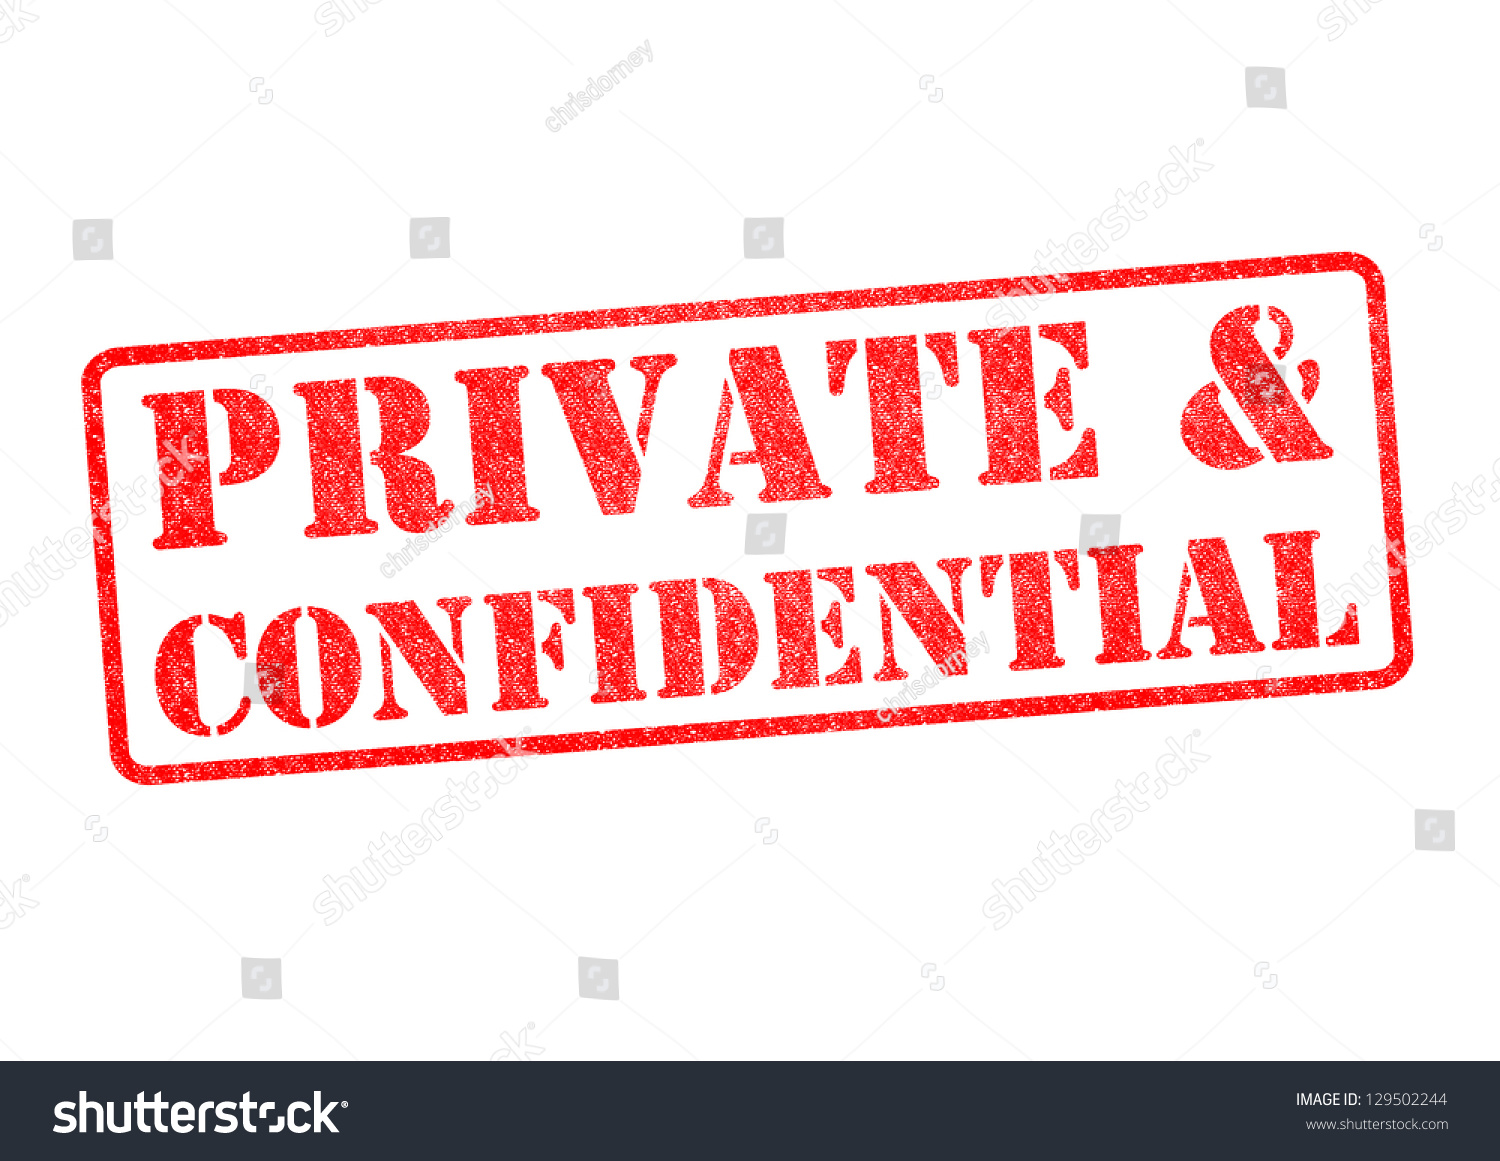 Private And Confidential 55 505 Images Photos Et Images Vectorielles De Stock Shutterstock 9212